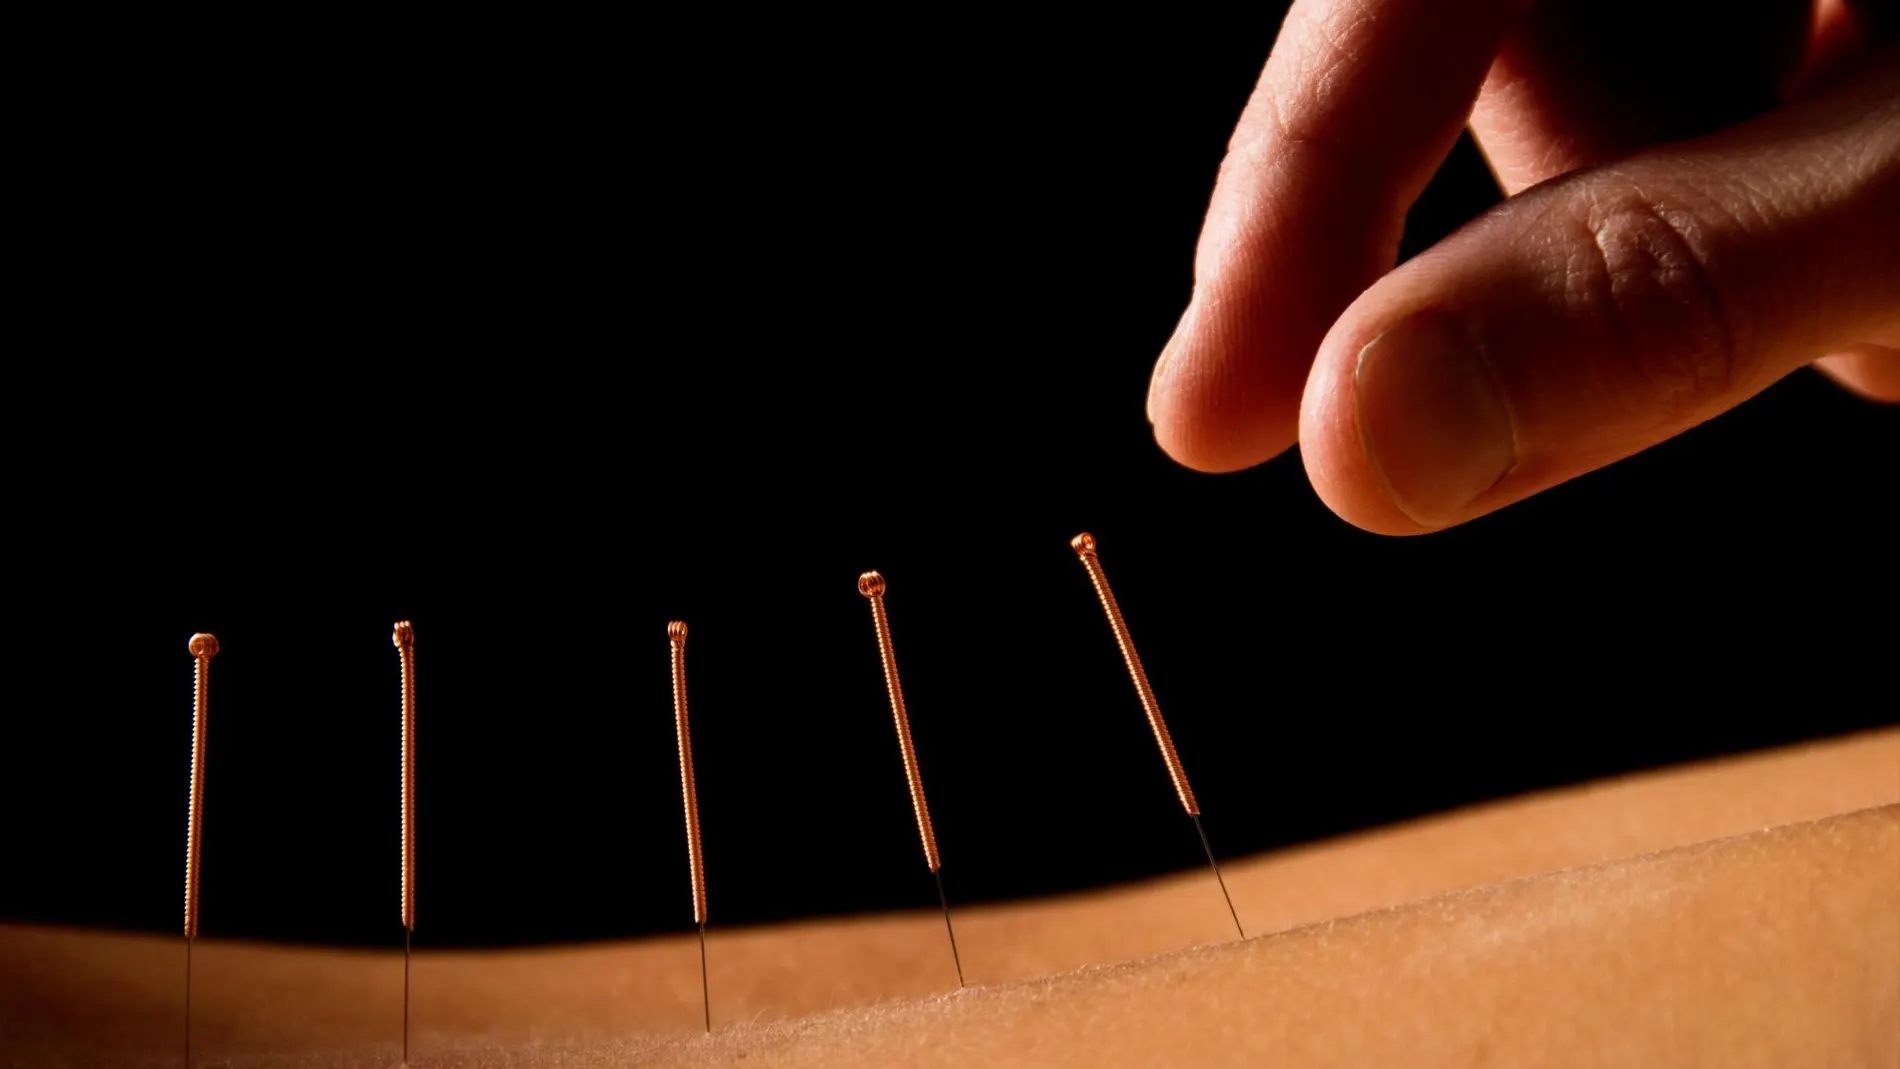 La acupuntura es un método heredado de la medicina tradicional china | Dreamstime